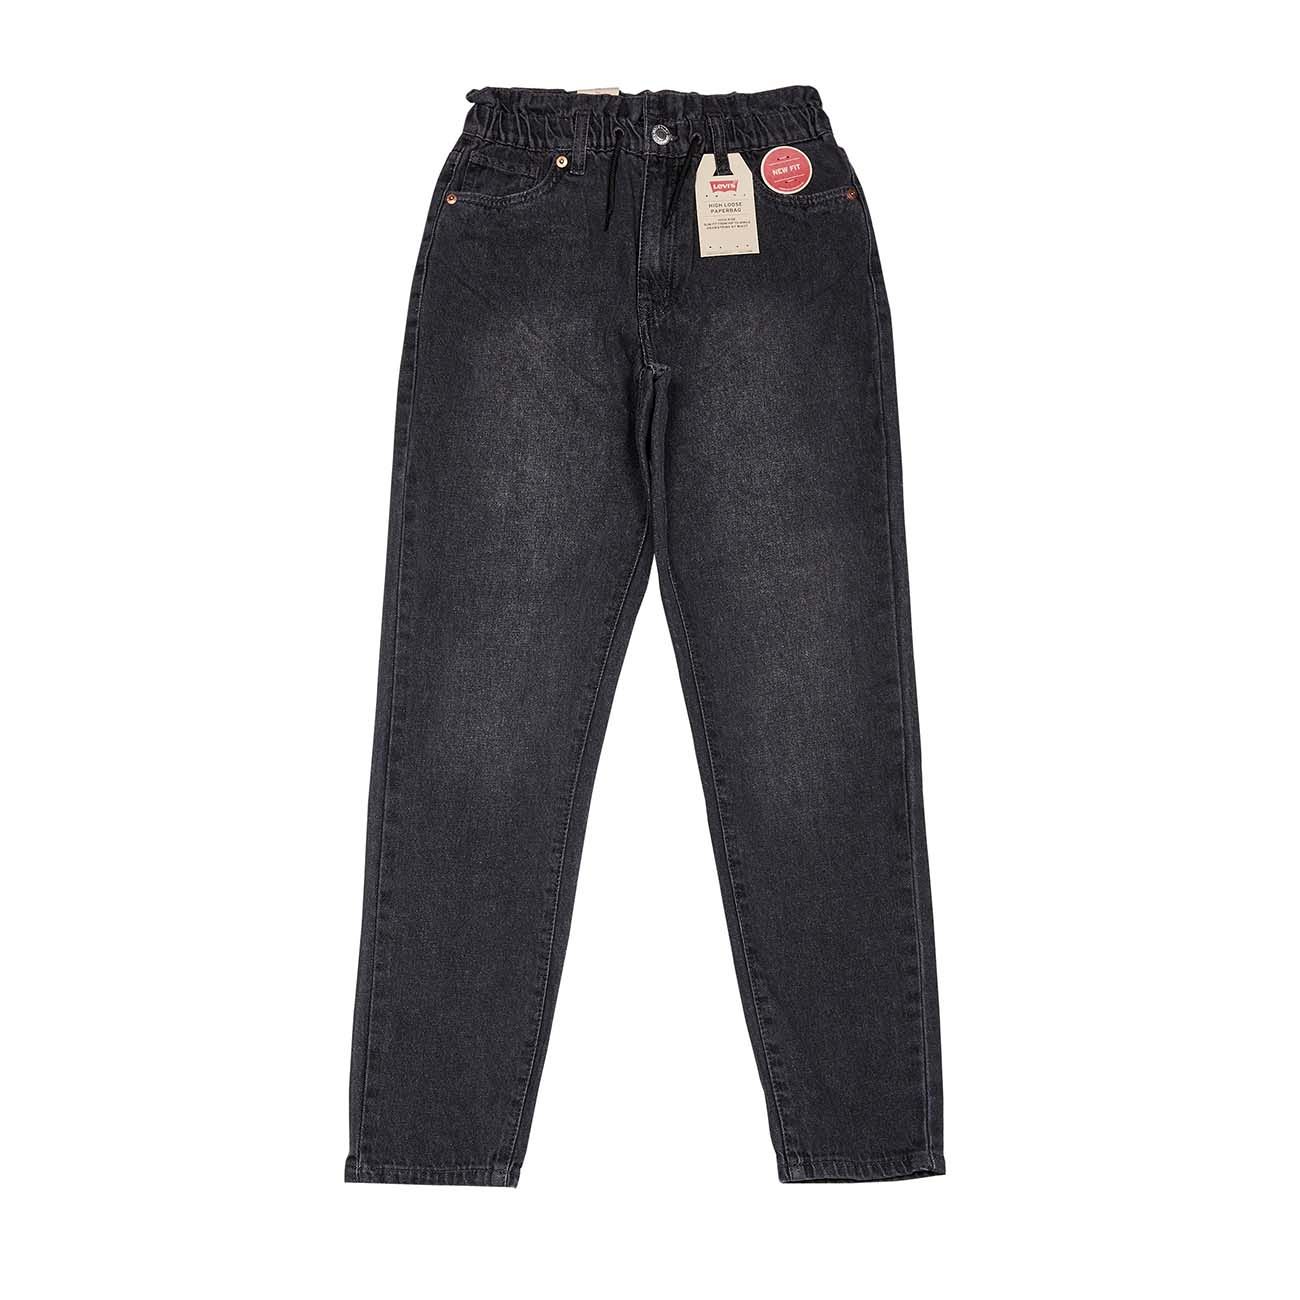 Medium Wash Jeans - High Rise Pants - Paper Bag Waist Pants - Lulus